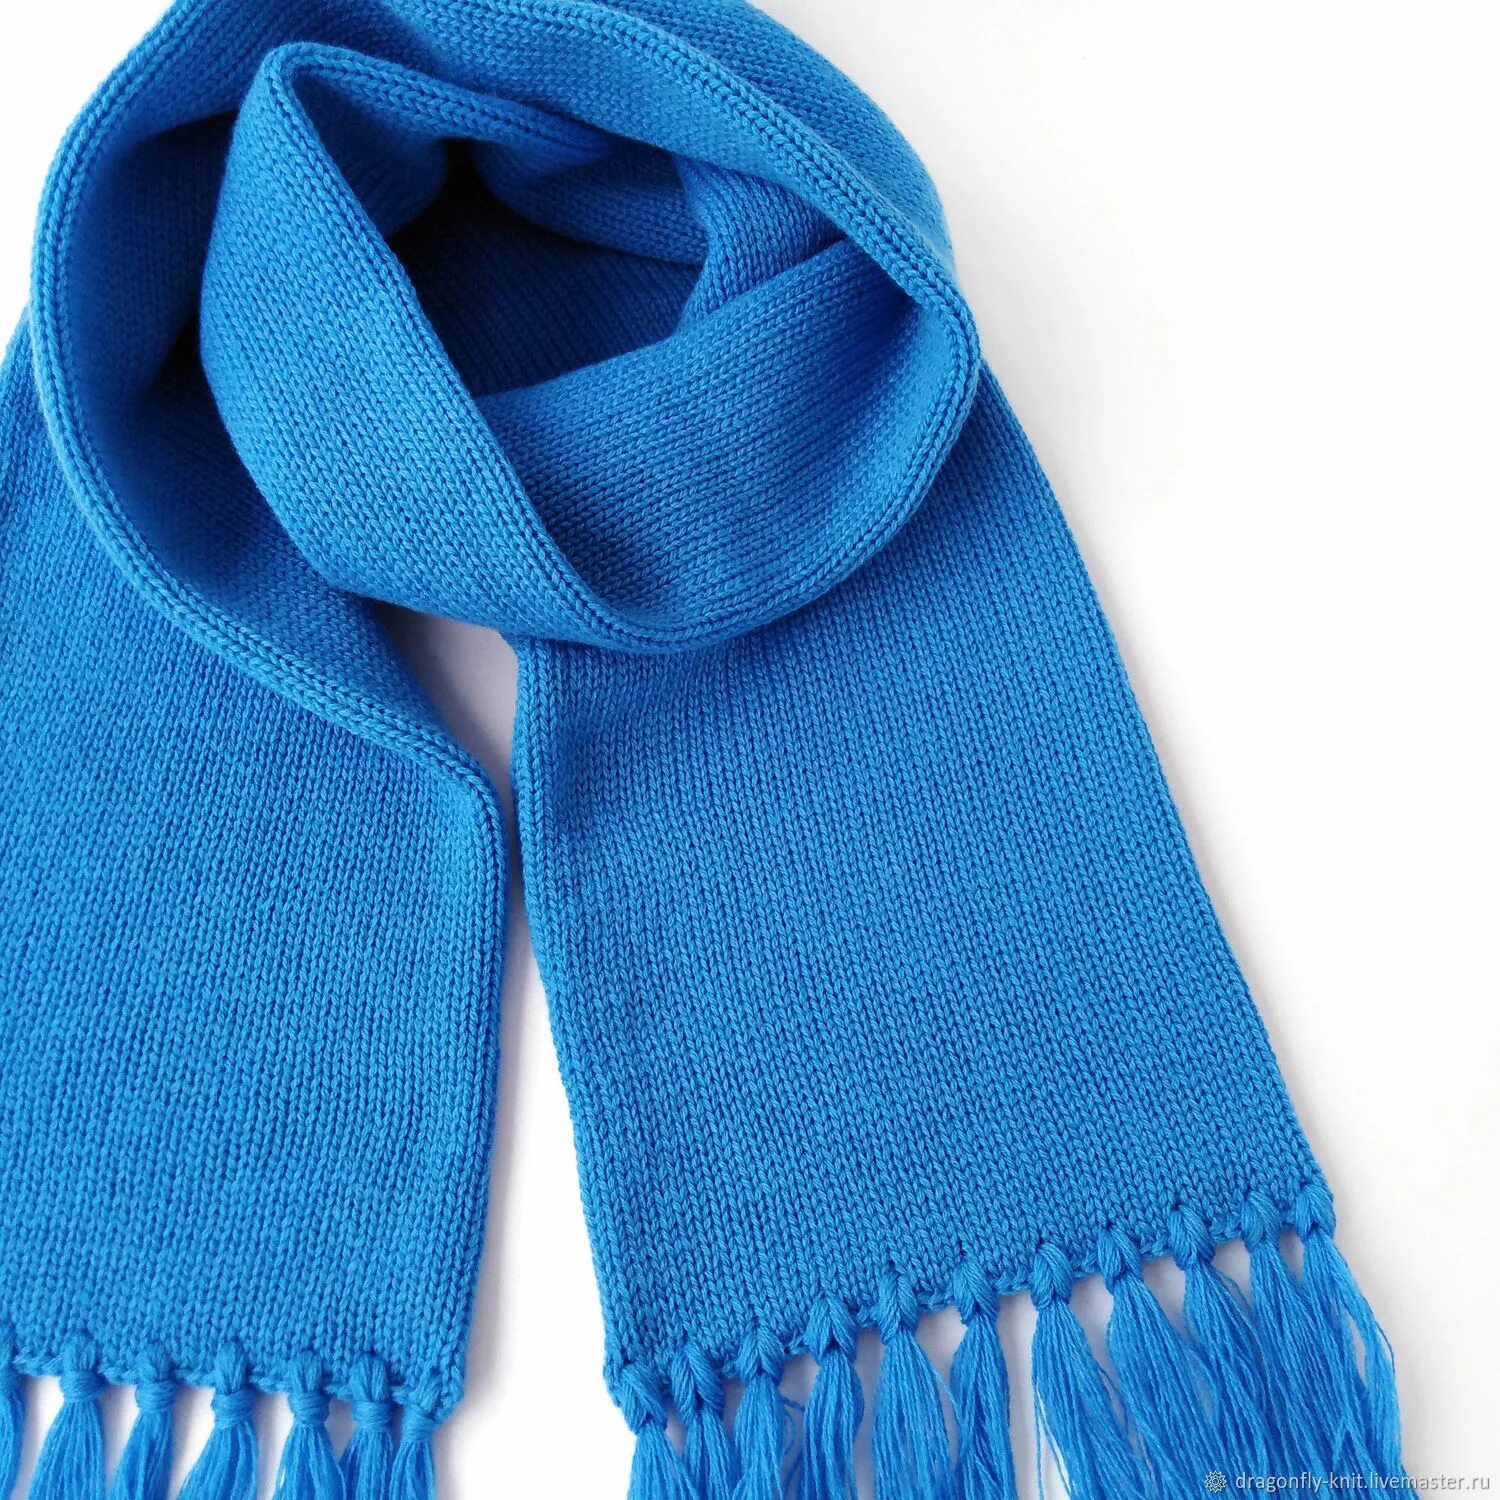 Шарф. Синий вязаный шарф. Трикотажный шарф. Шерстяной шарф. Синий шарф купить